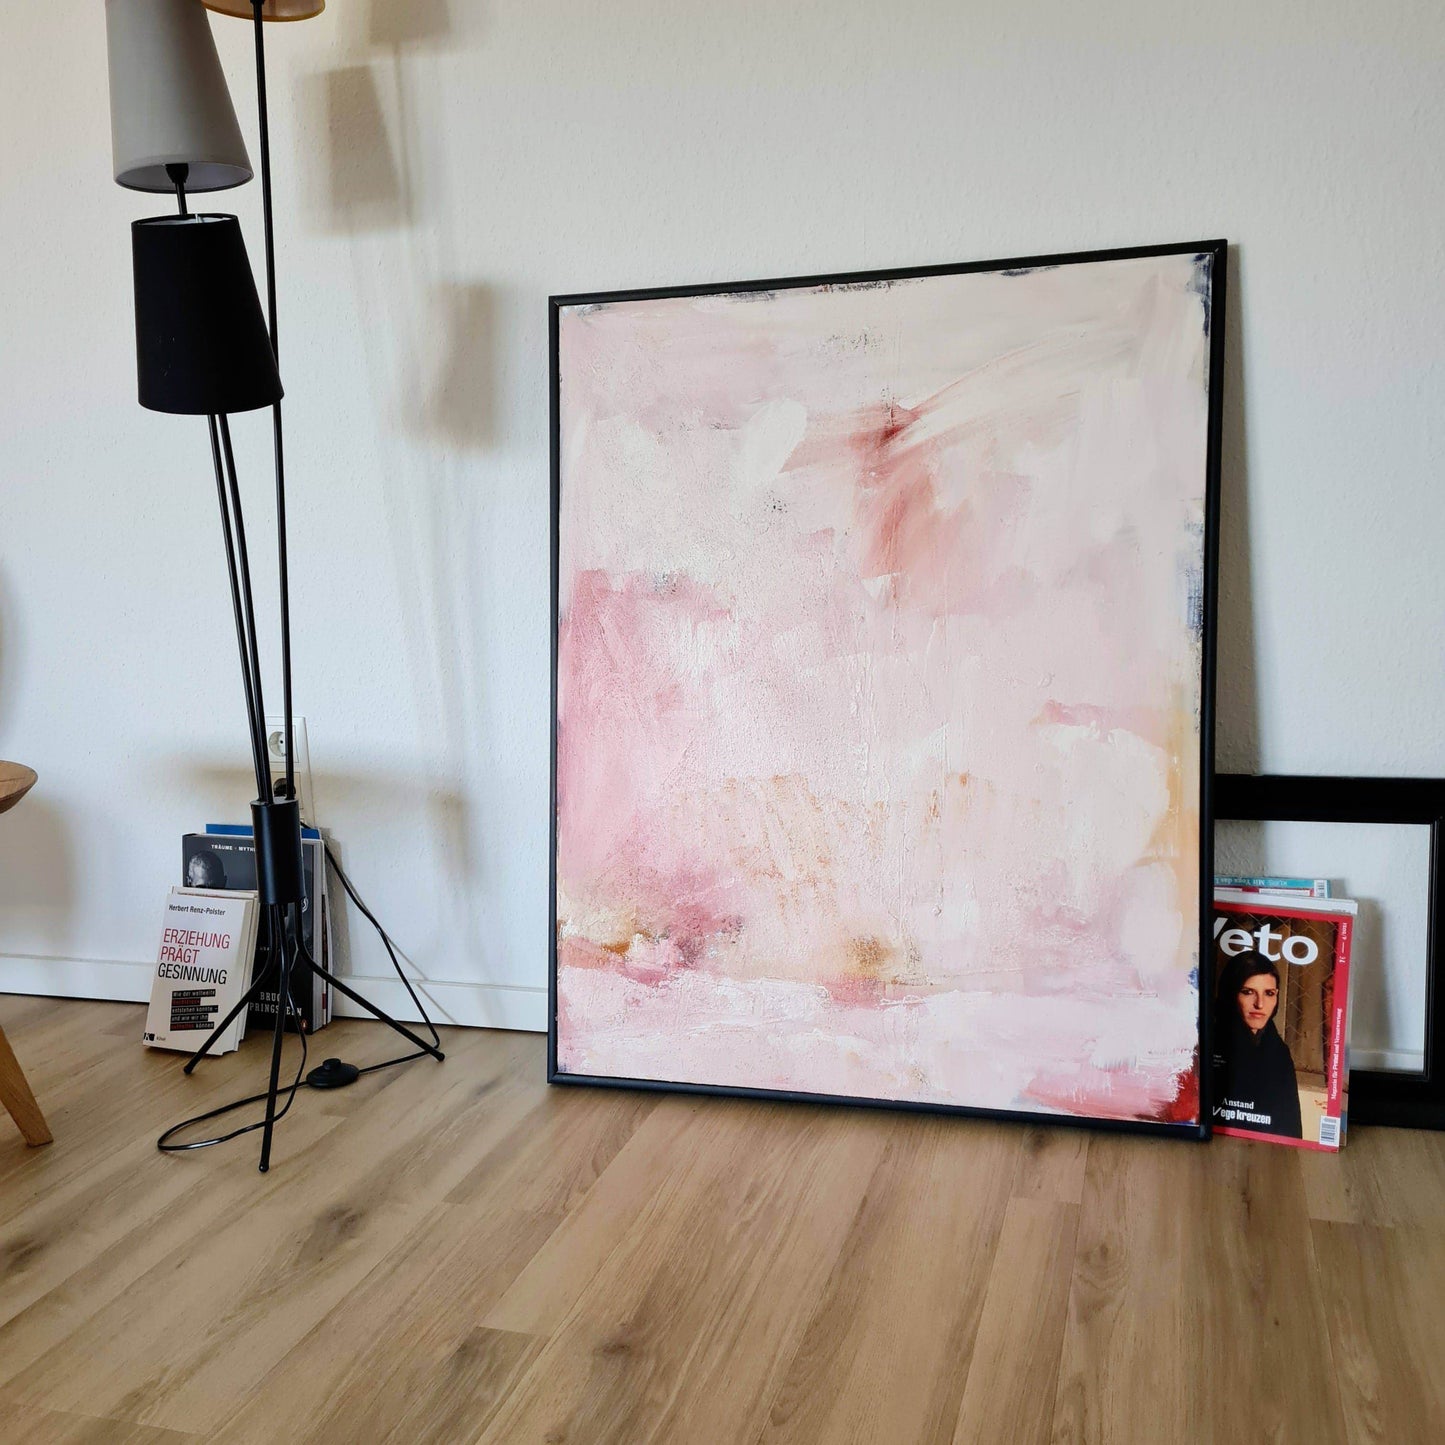 Individuelles Kunstwerk - Sanftes Rosa-Weißes Bild auf Bestellung Abstrakte Bilder & moderne Auftragsmalerei, abstrakte große bilder online kaufen, Auftrags Malere